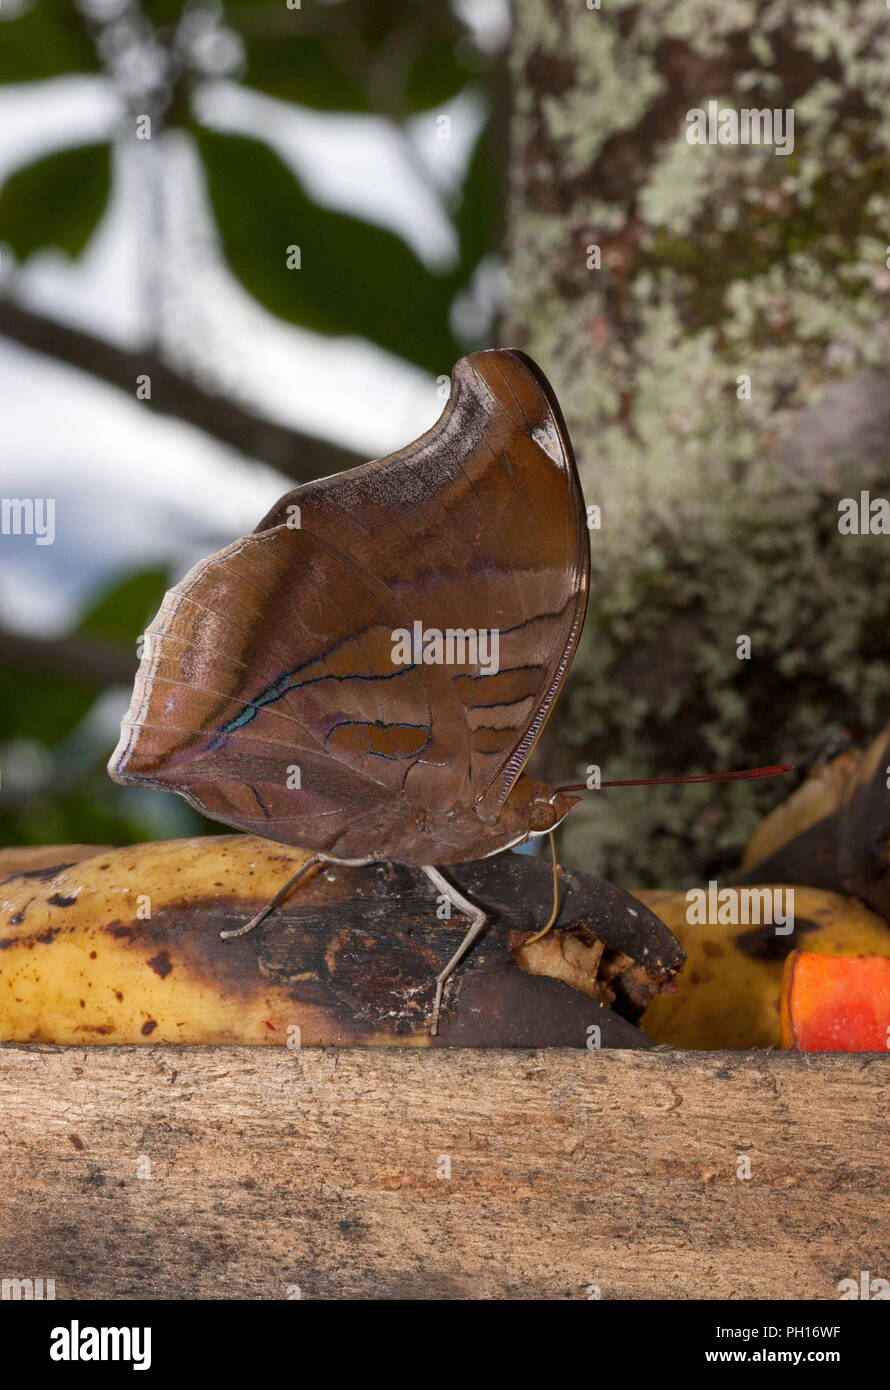 Historis odius, papillon, seul adulte se nourrit de bananes. Prises d'avril. La Forêt Tropicale Atlantique, au Brésil. Banque D'Images